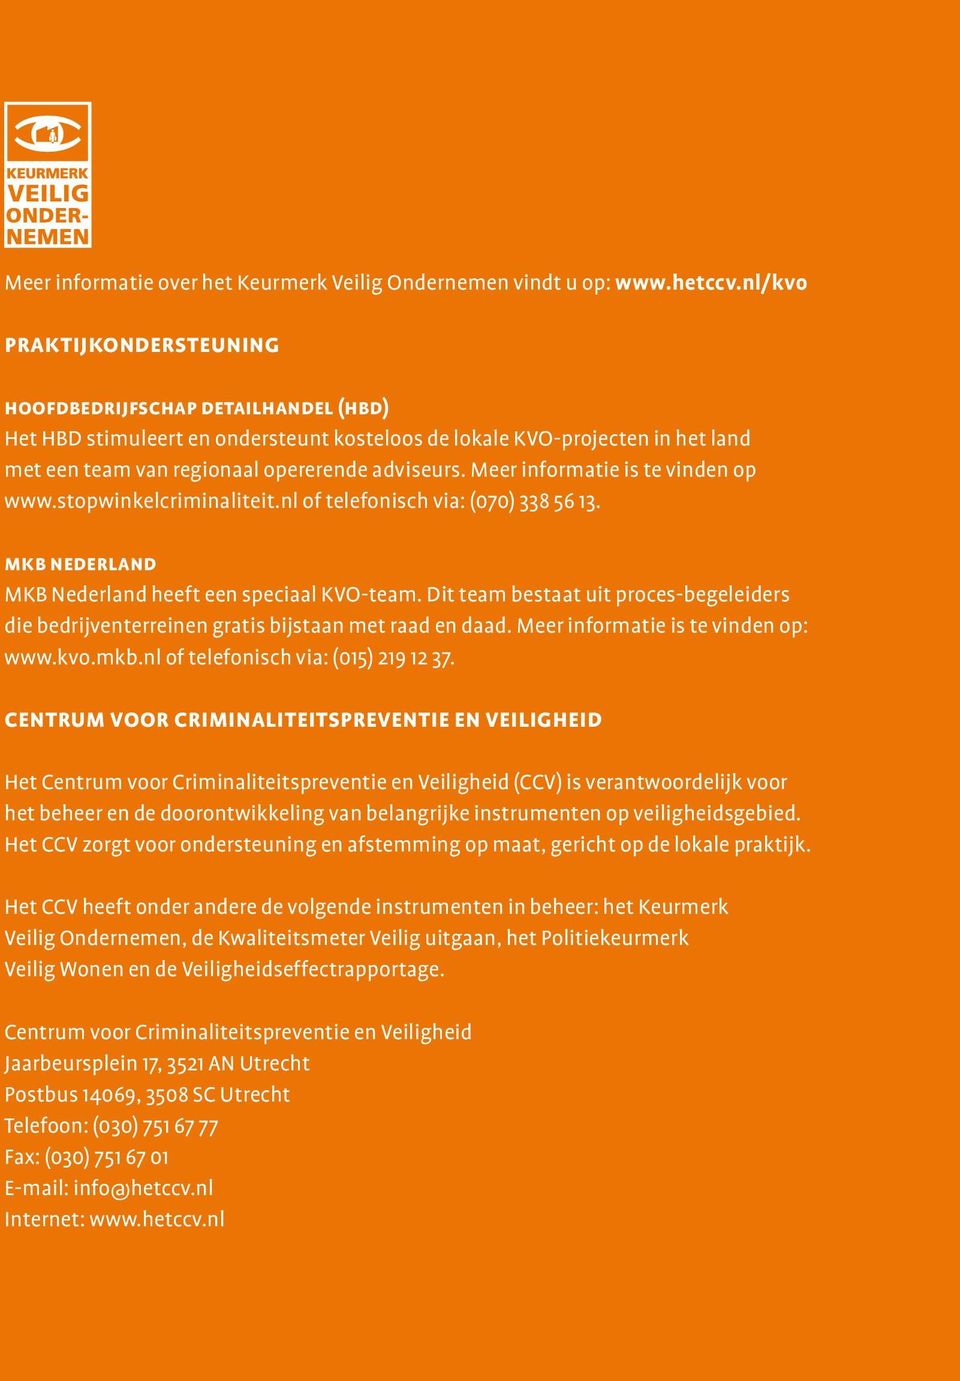 Meer informatie is te vinden op www.stopwinkelcriminaliteit.nl of telefonisch via: (070) 338 56 13. mkb nederland MKB Nederland heeft een speciaal KVO-team.